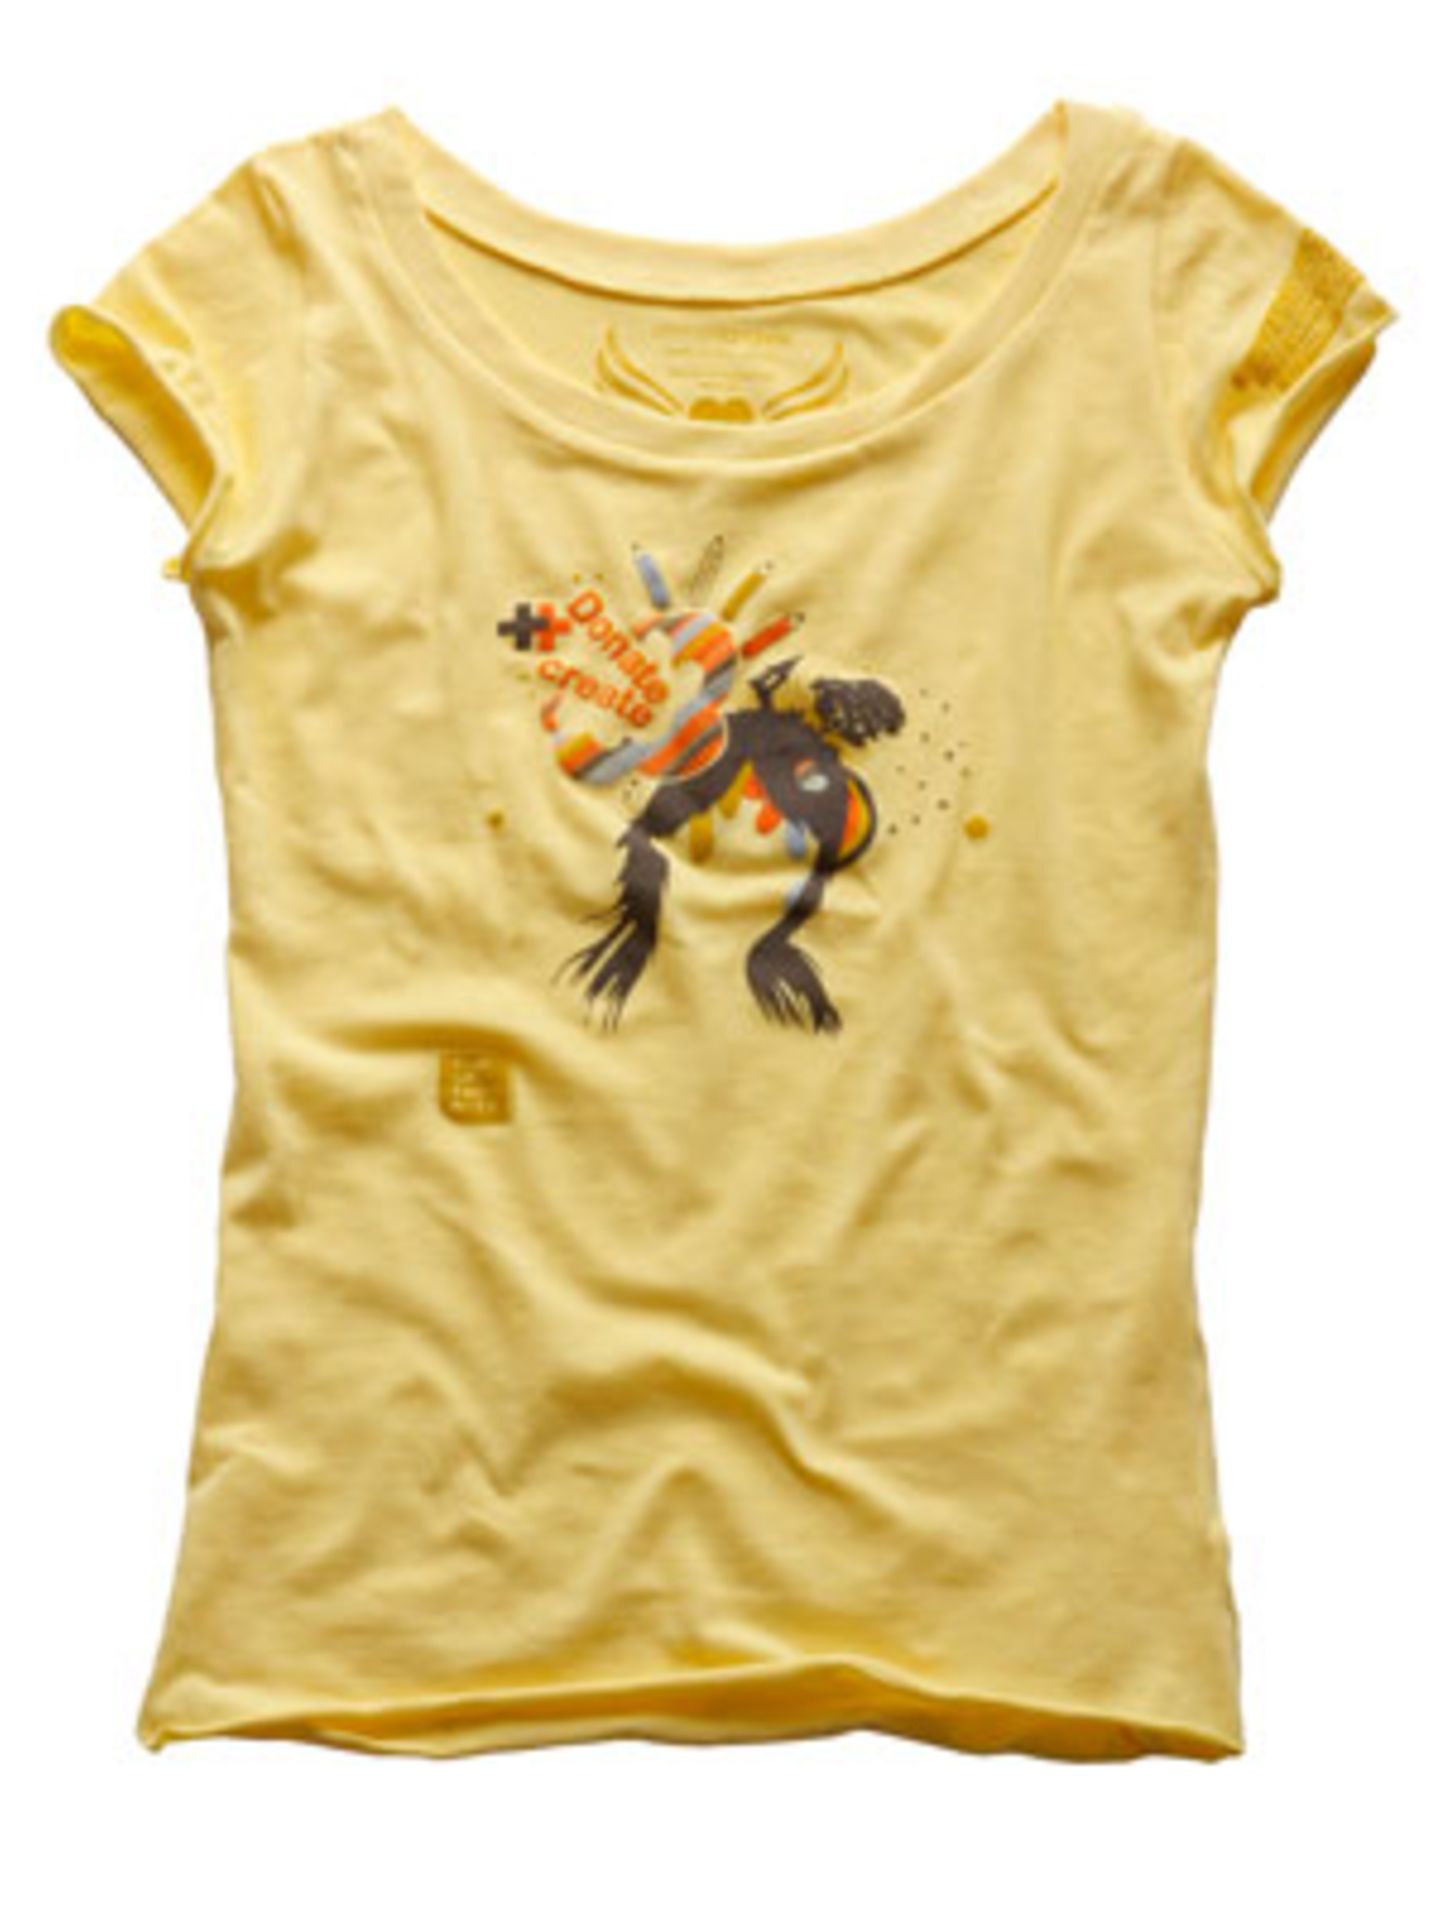 Dieses enganliegende Girl-Shirt bringt Licht ins Dunkel; aus 100 Prozent Fairtrade Cotton; 29,90 Euro; inkl. MwSt./zzgl. Versandkosten; über >> www.armedangels.de